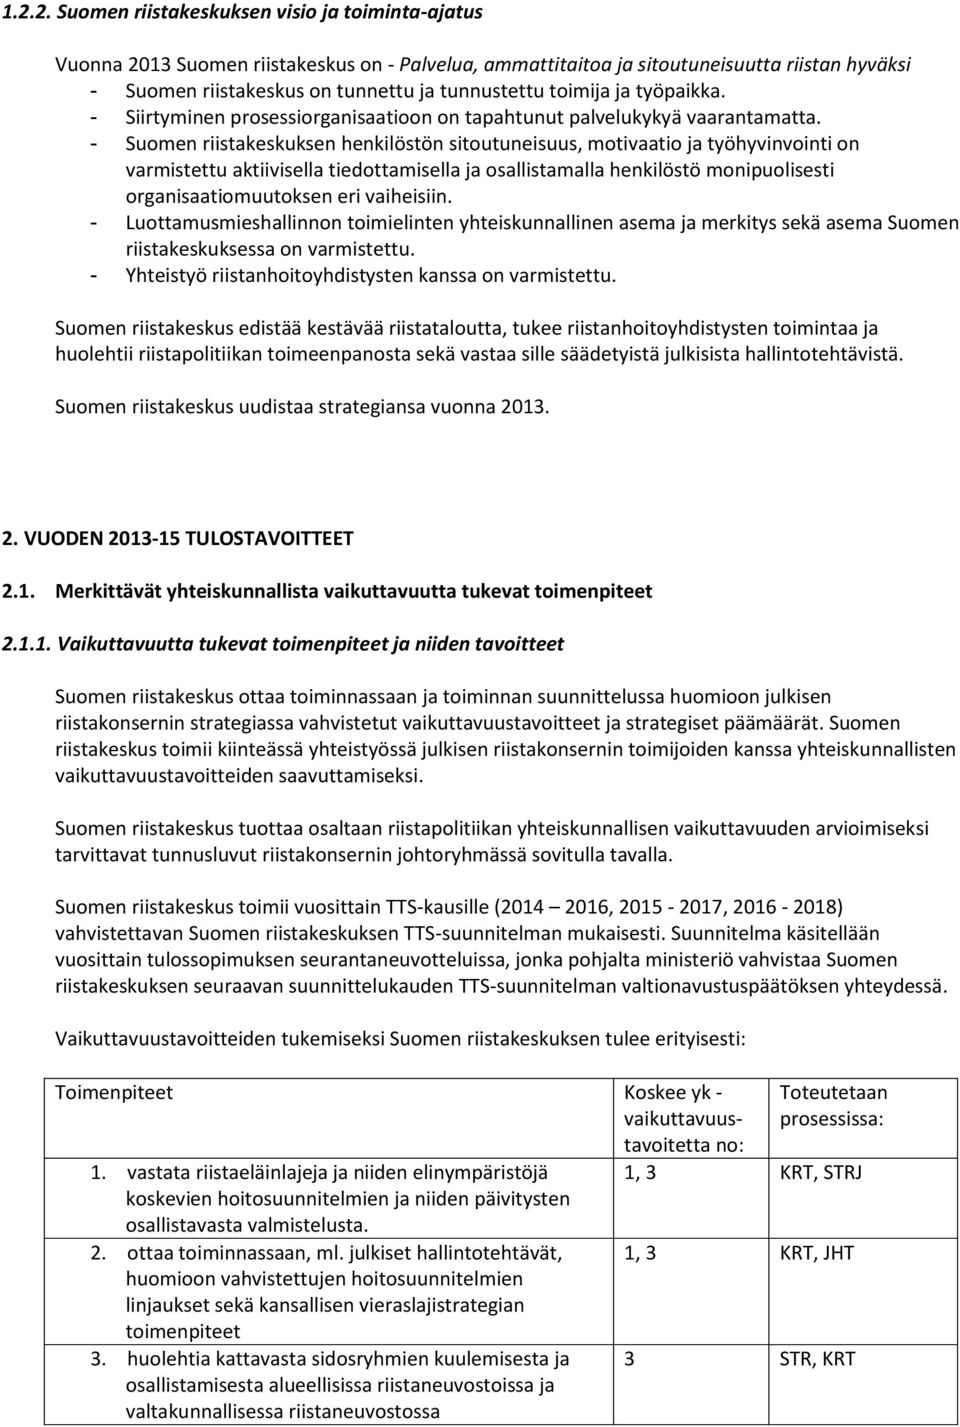 - Suomen riistakeskuksen henkilöstön sitoutuneisuus, motivaatio ja työhyvinvointi on varmistettu aktiivisella tiedottamisella ja osallistamalla henkilöstö monipuolisesti organisaatiomuutoksen eri